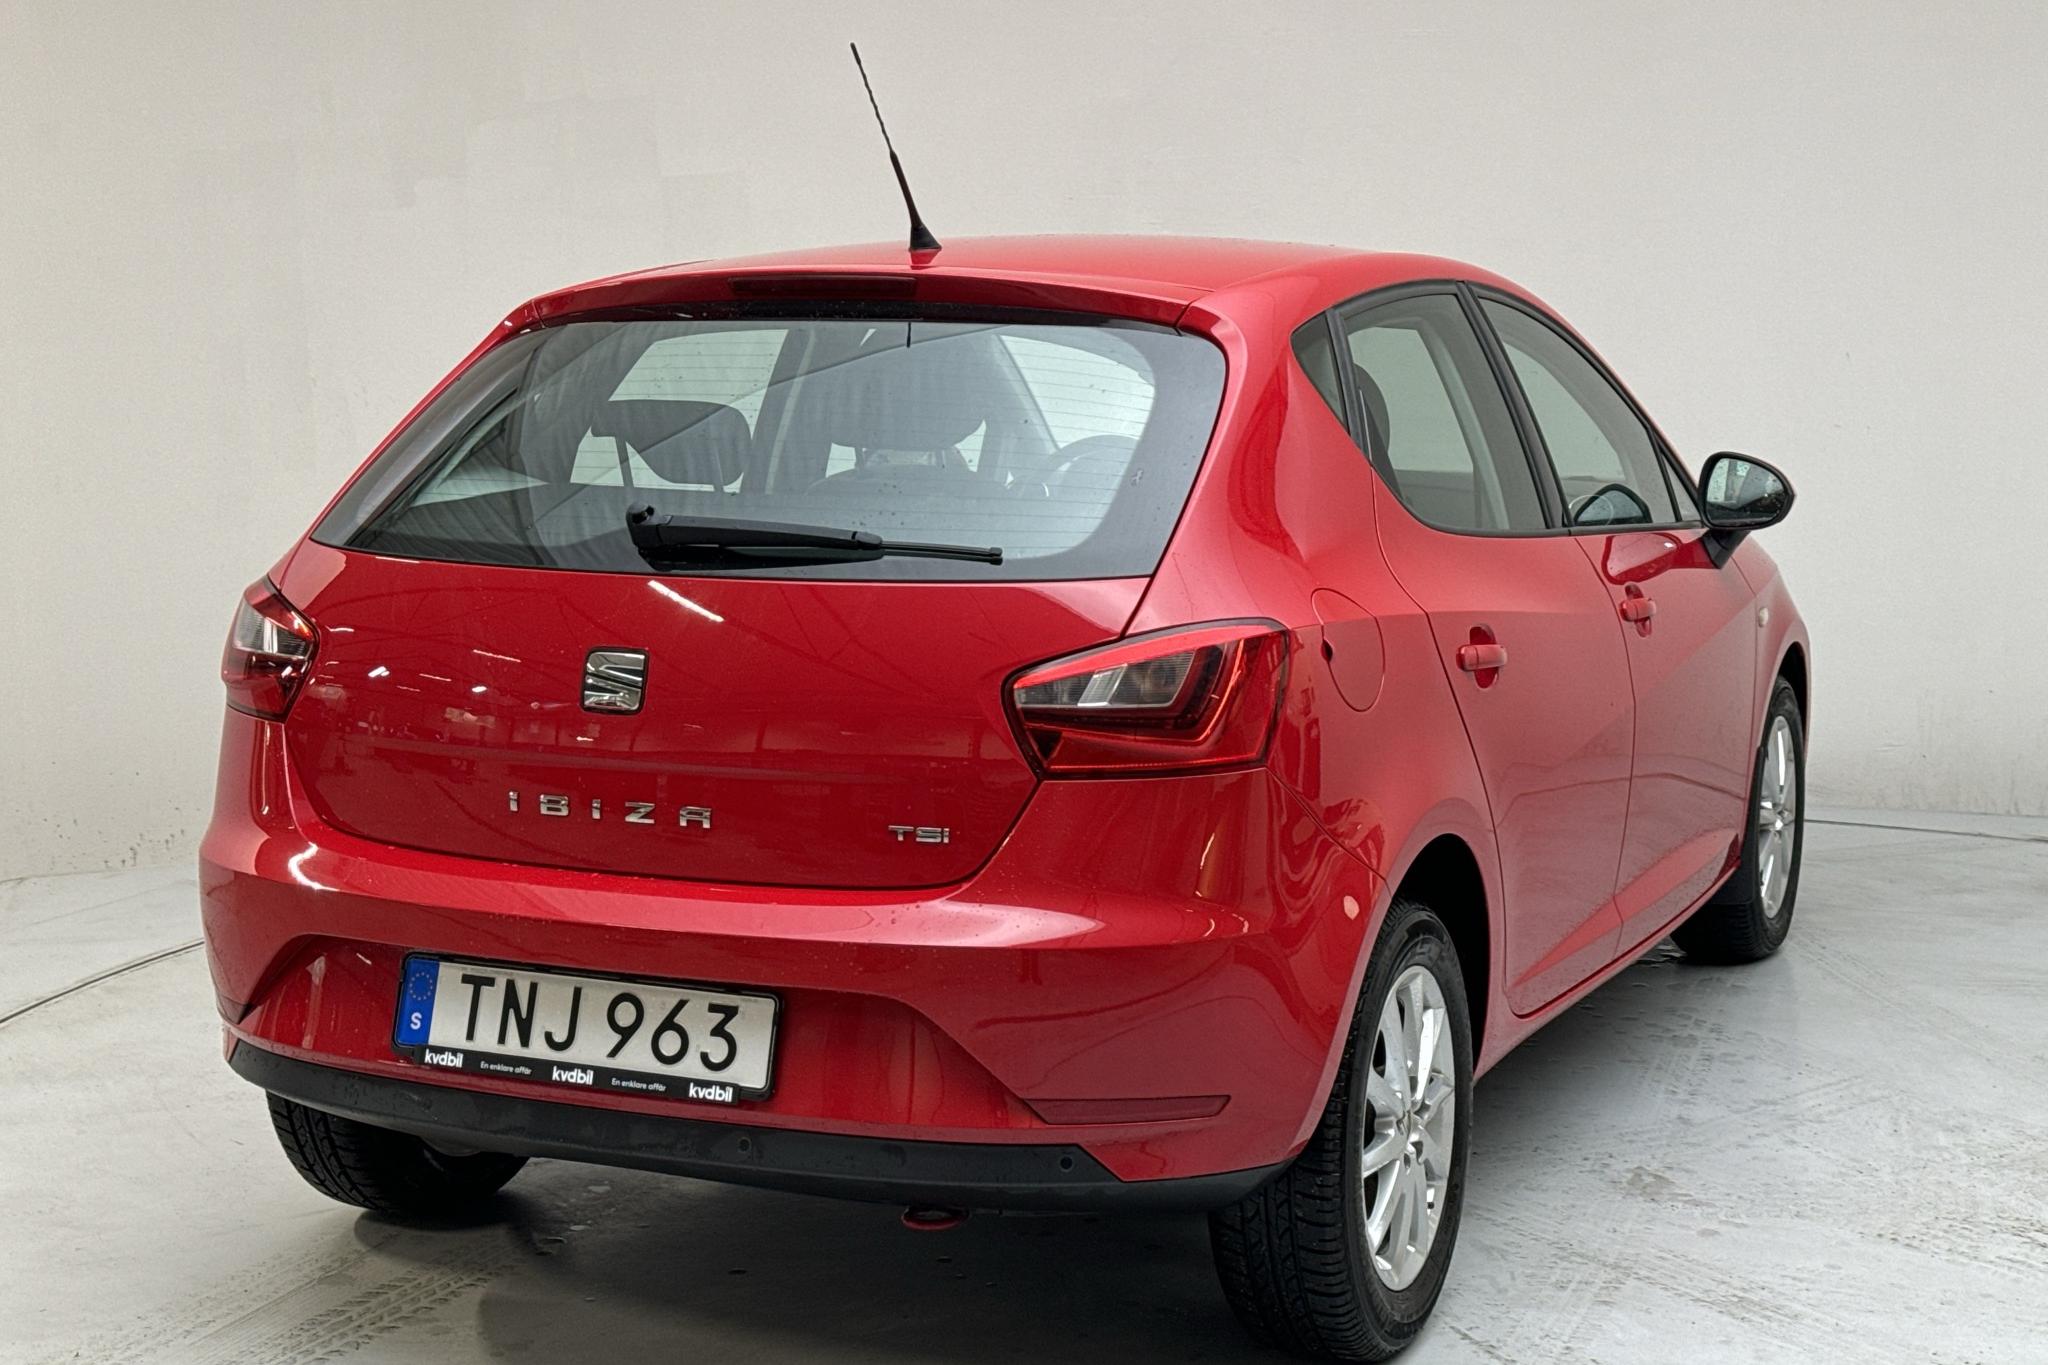 Seat Ibiza 1.2 TSI 5dr (90hk) - 72 940 km - Manual - red - 2017